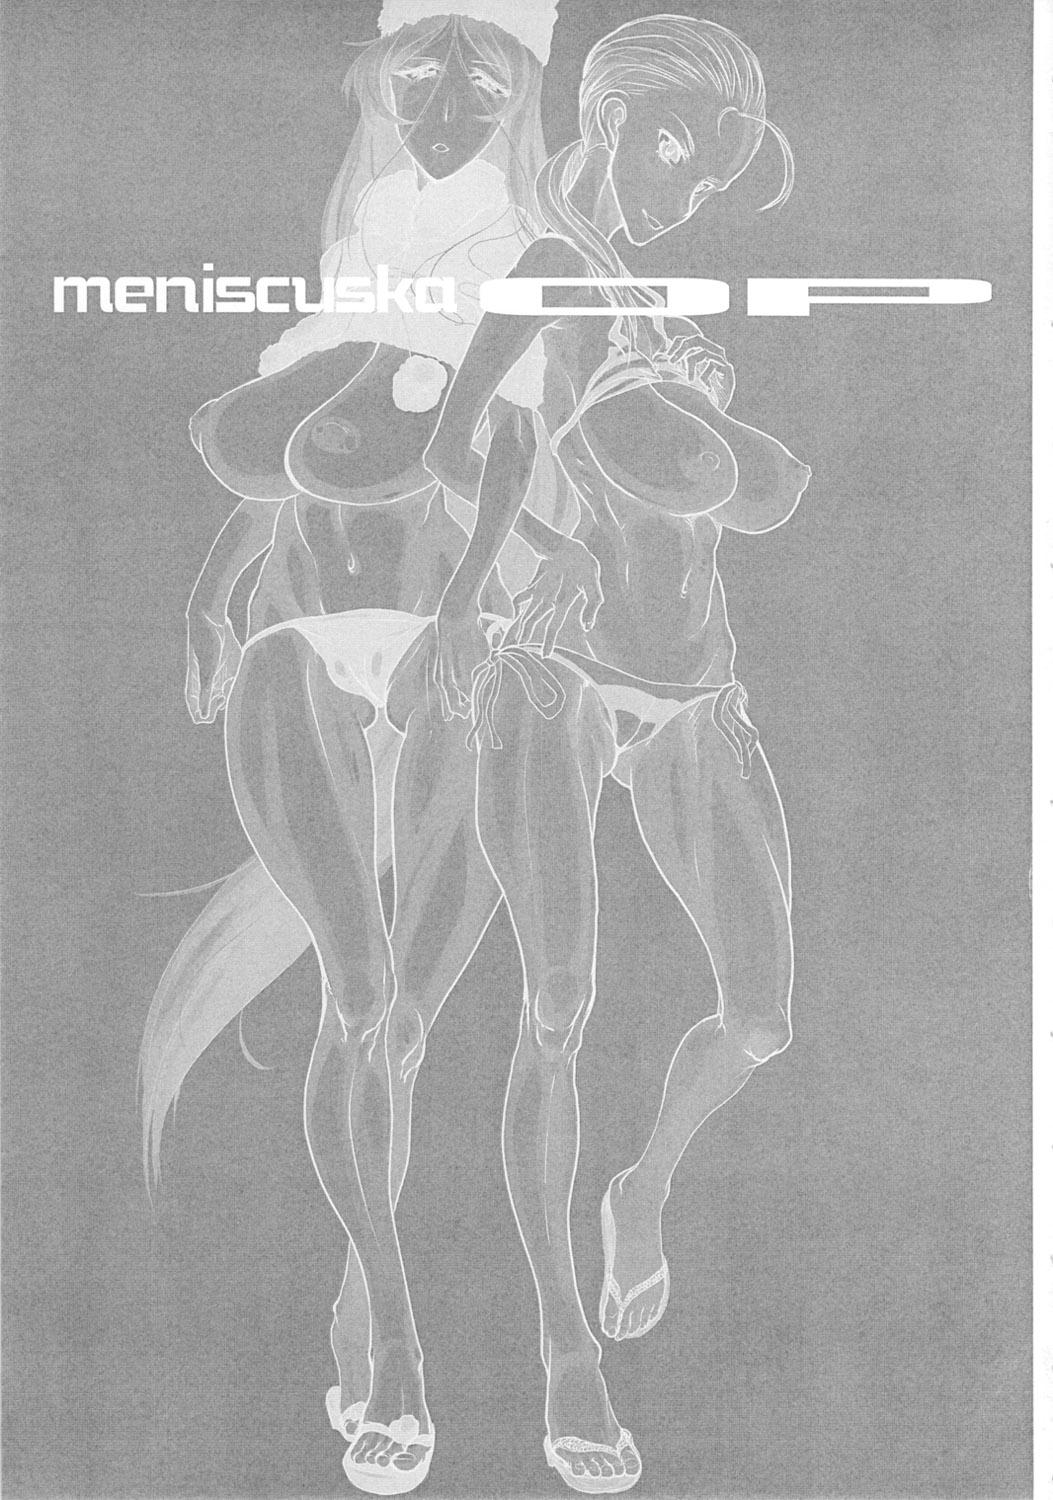 Friends Meniscuska OP - Neon genesis evangelion Galaxy express 999 Solo Female - Page 2